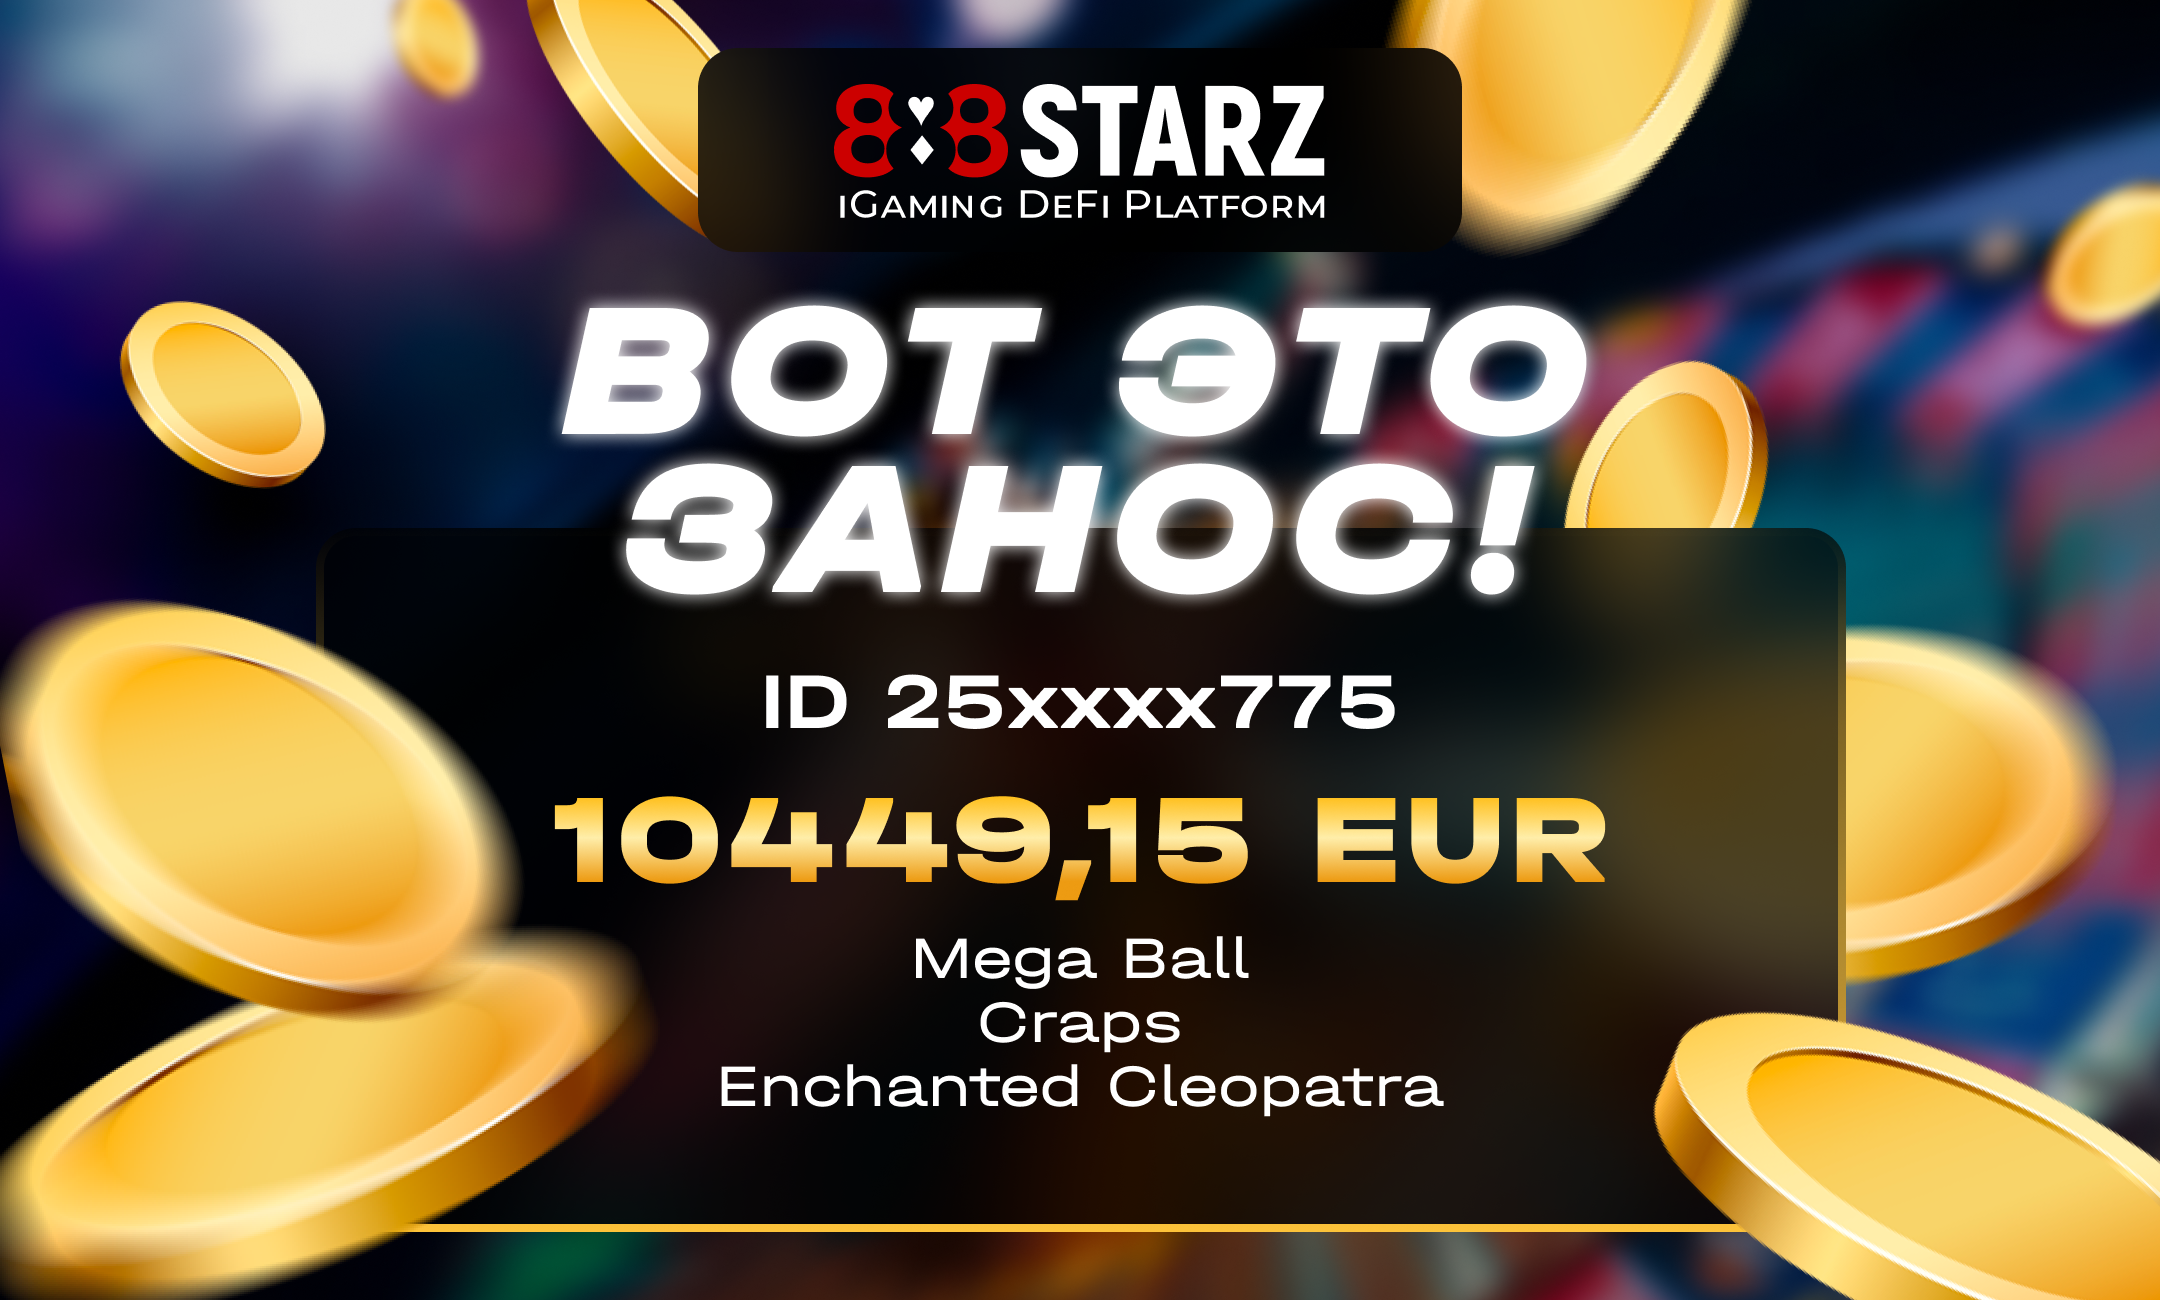 888starz зеркало 888starz support. 888starz Casino. 888starz sche. 888starz logo. 888starz Phone.